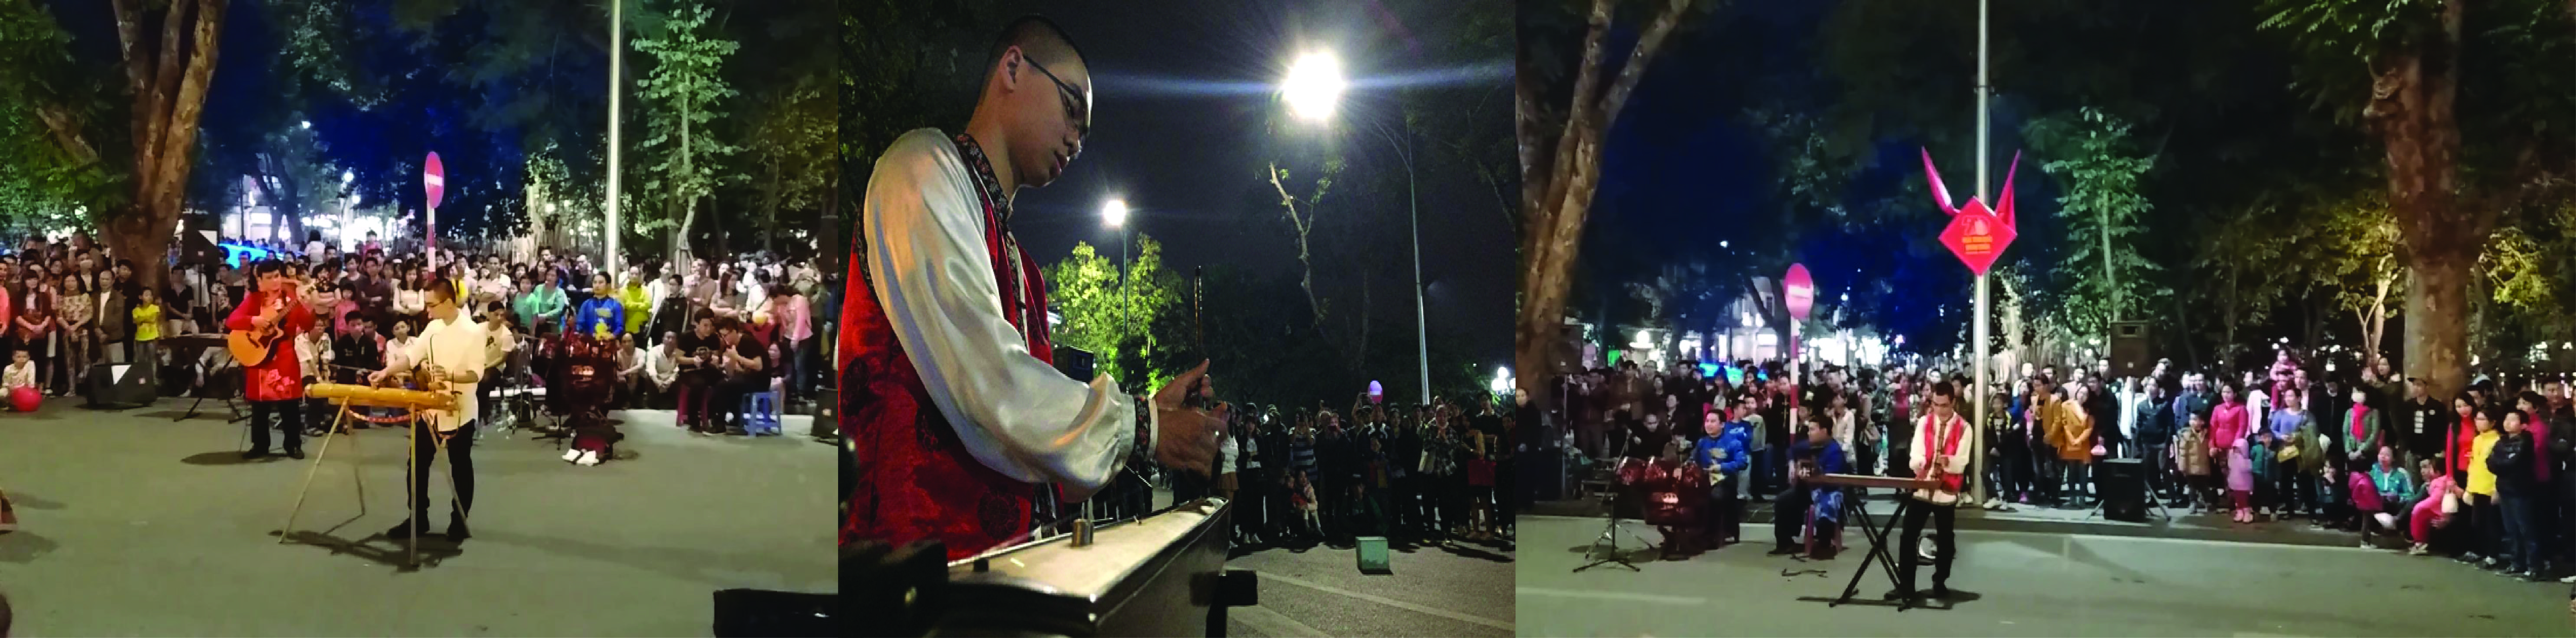    武黎明在河内步行街区表演。本图片由武黎明提供。